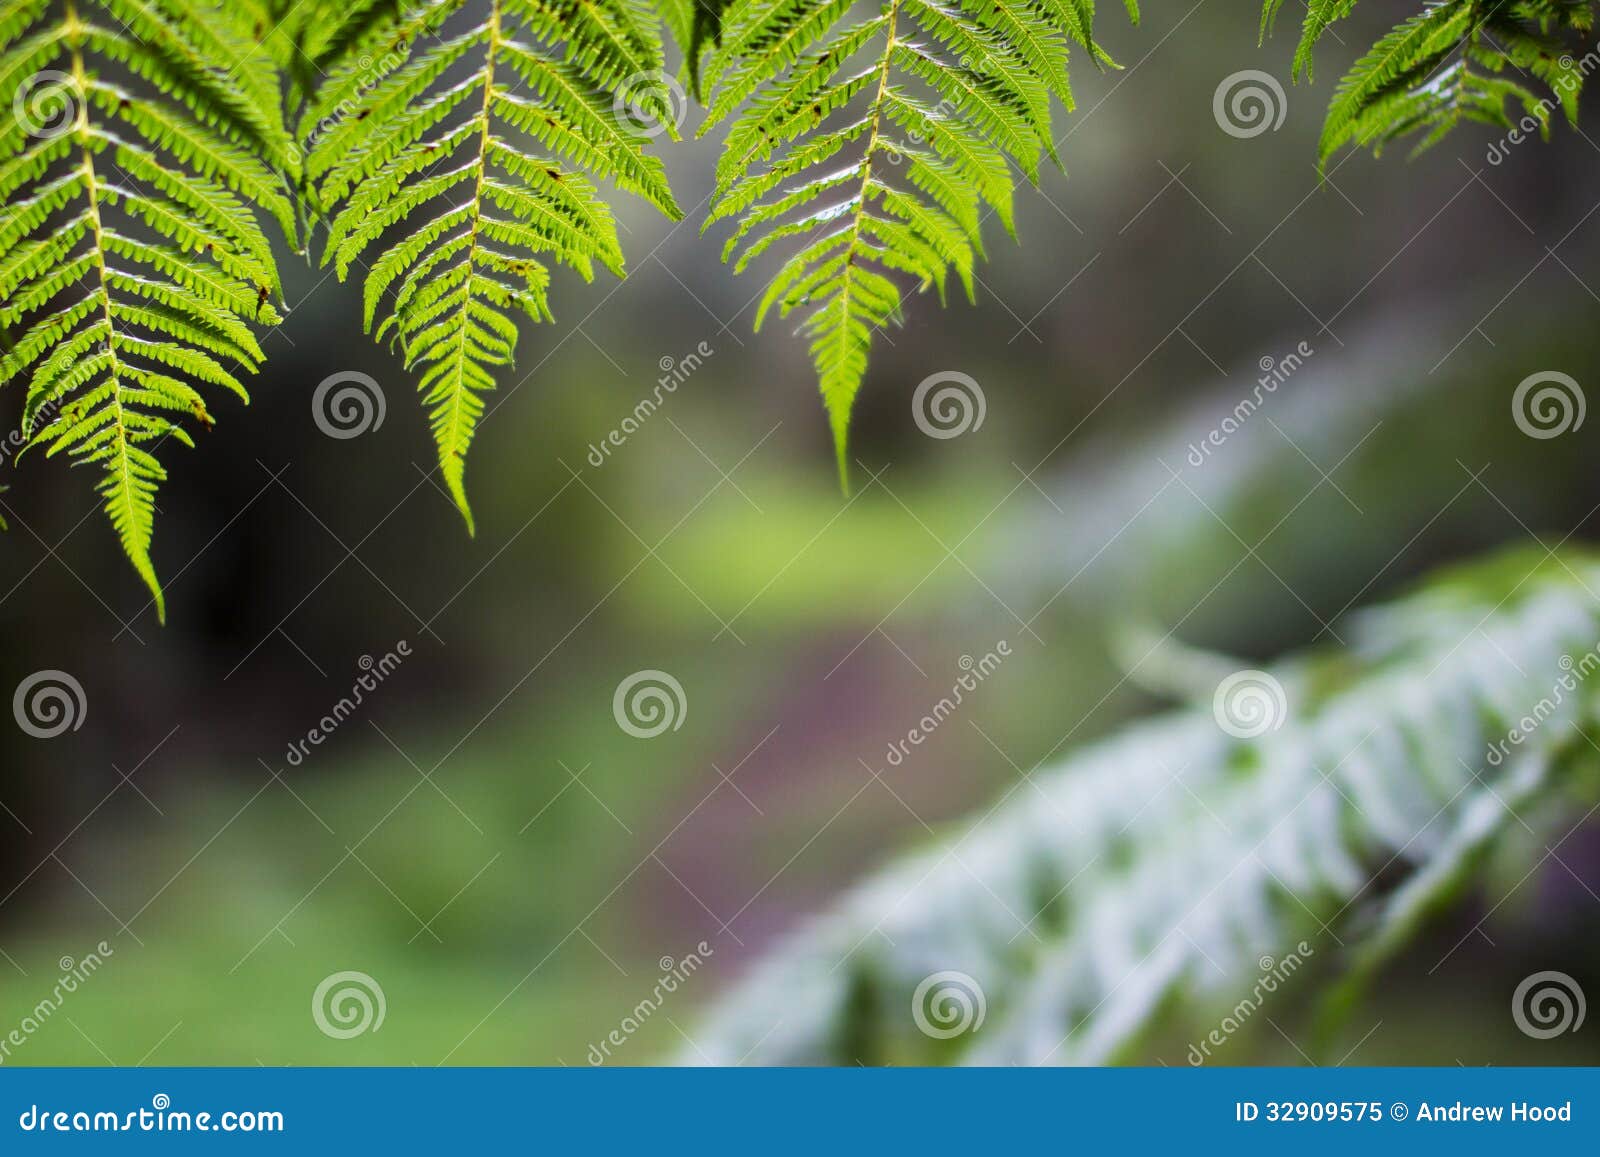 sunlit ferns overhanging forest trail